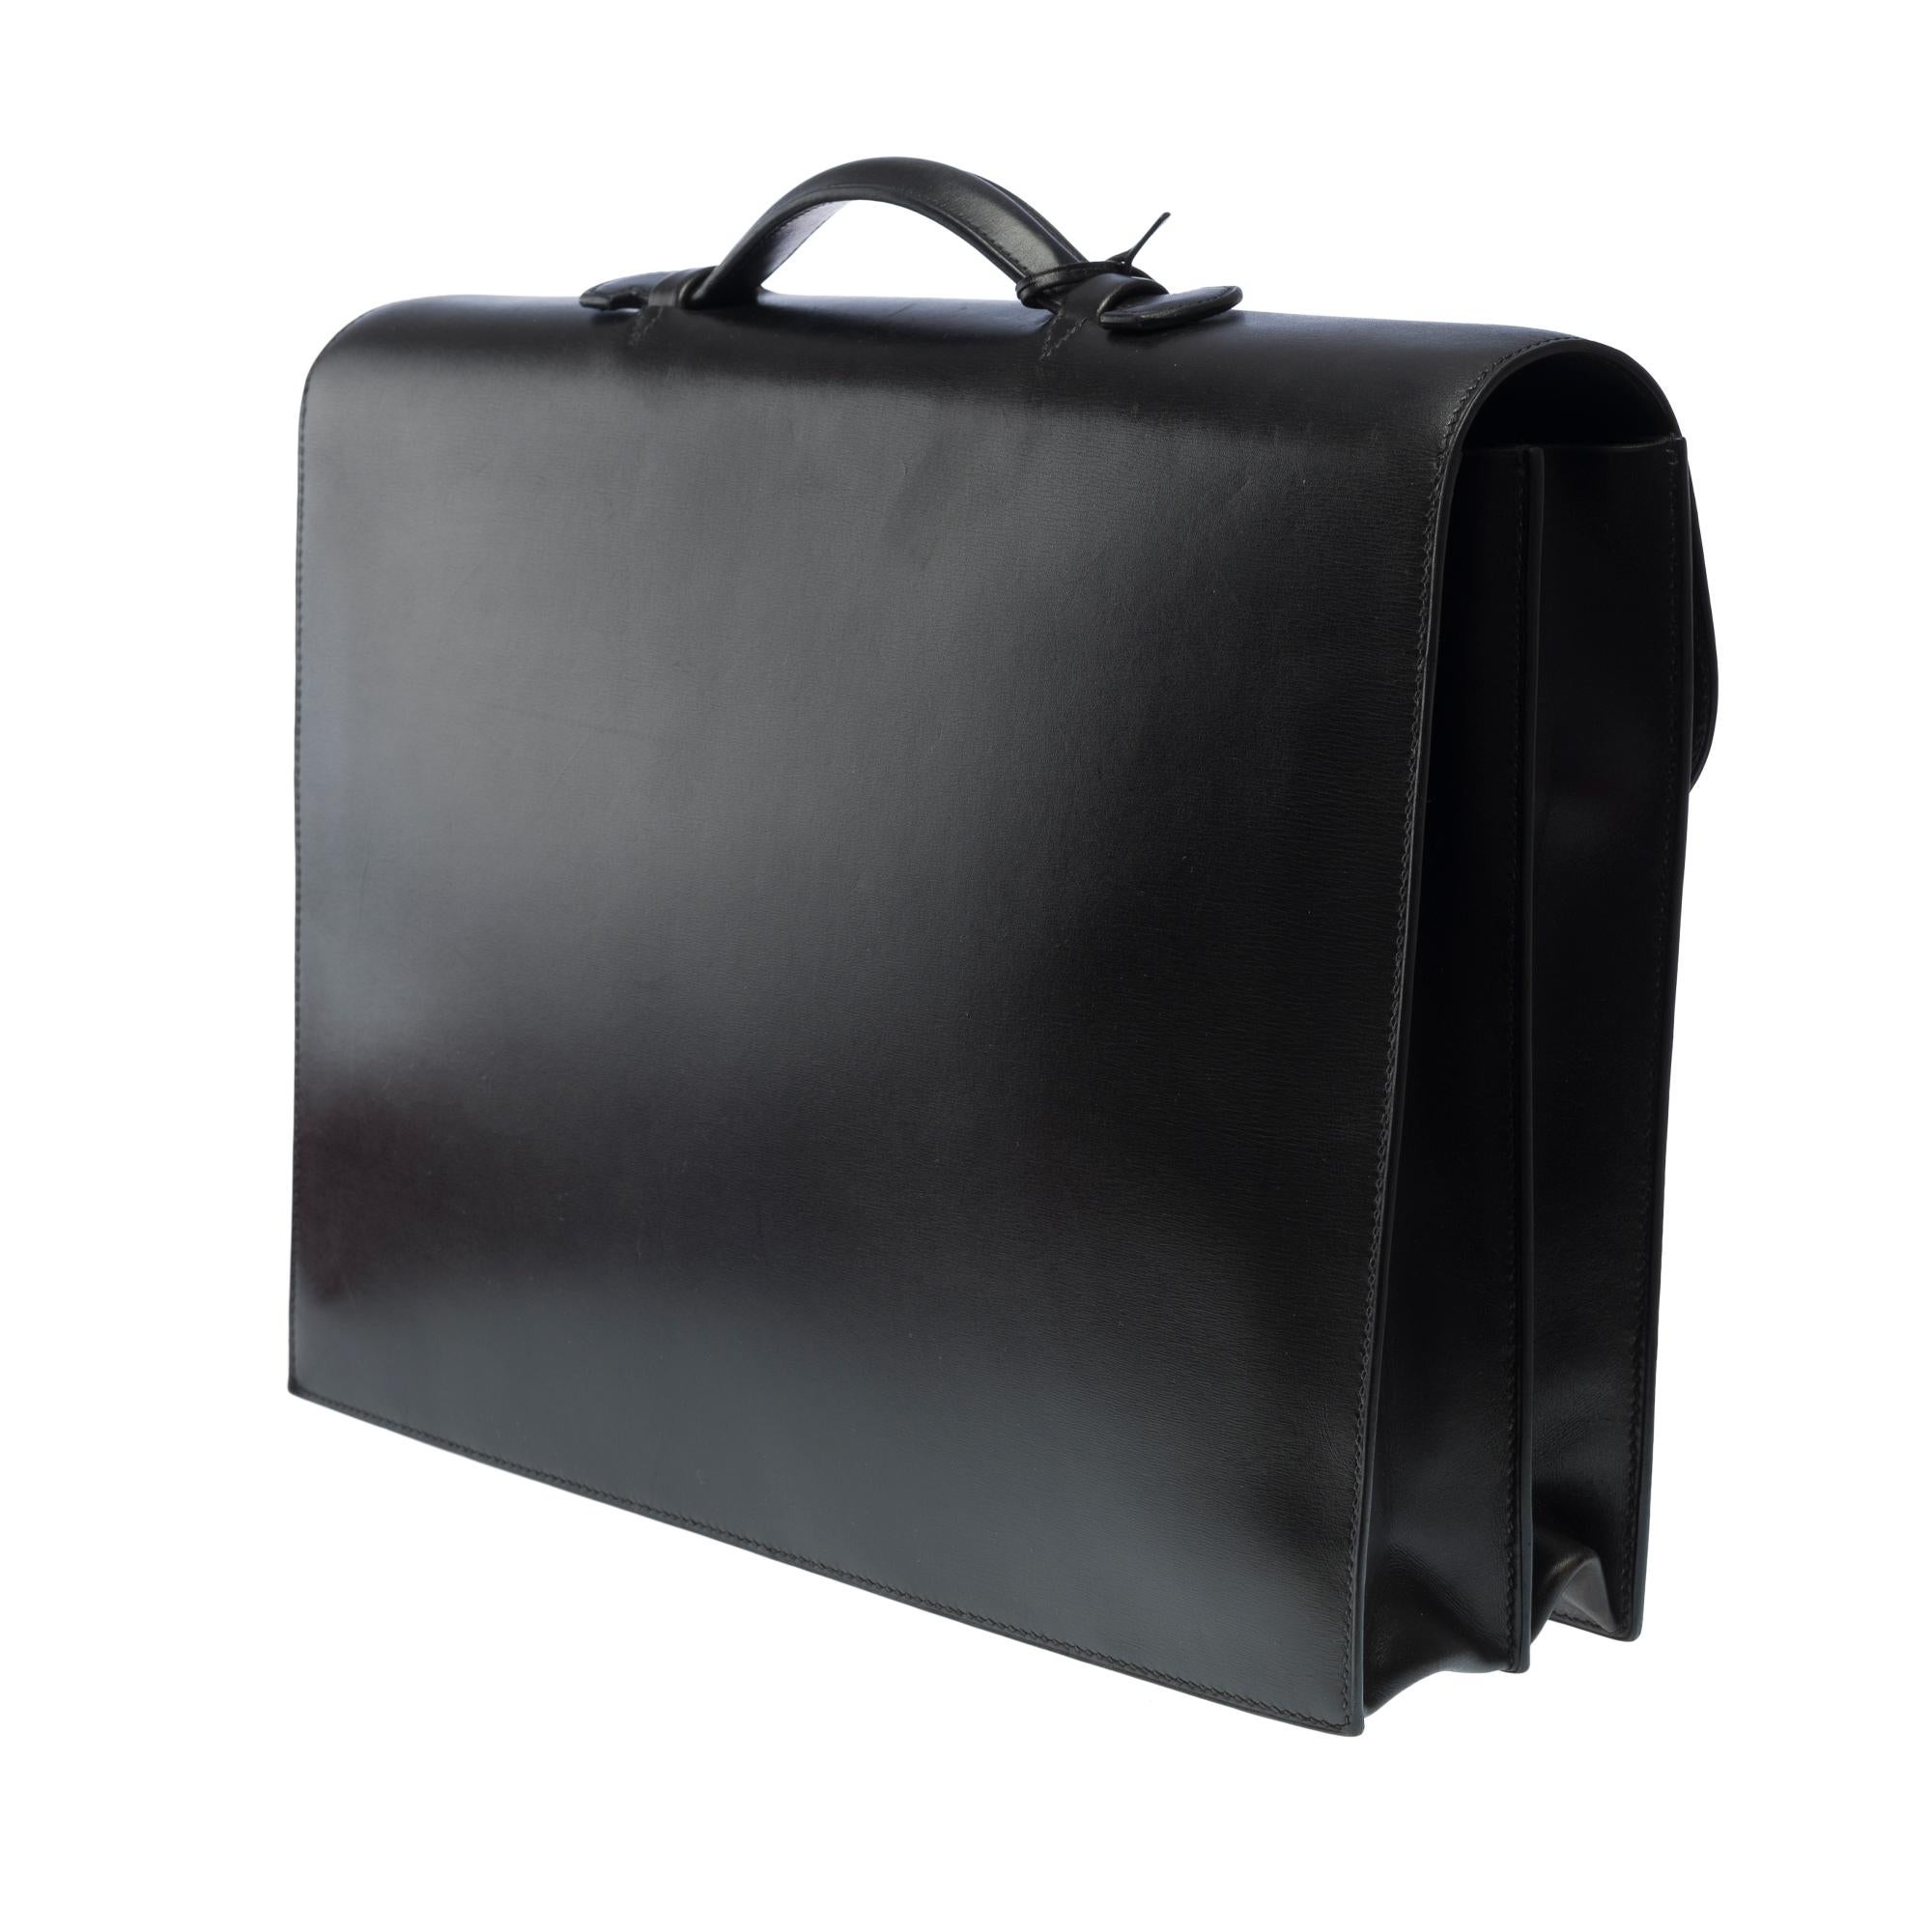 Men's Beautiful & Chic Hermès Sac à dépêches briefcase in black box Calf leather, SHW